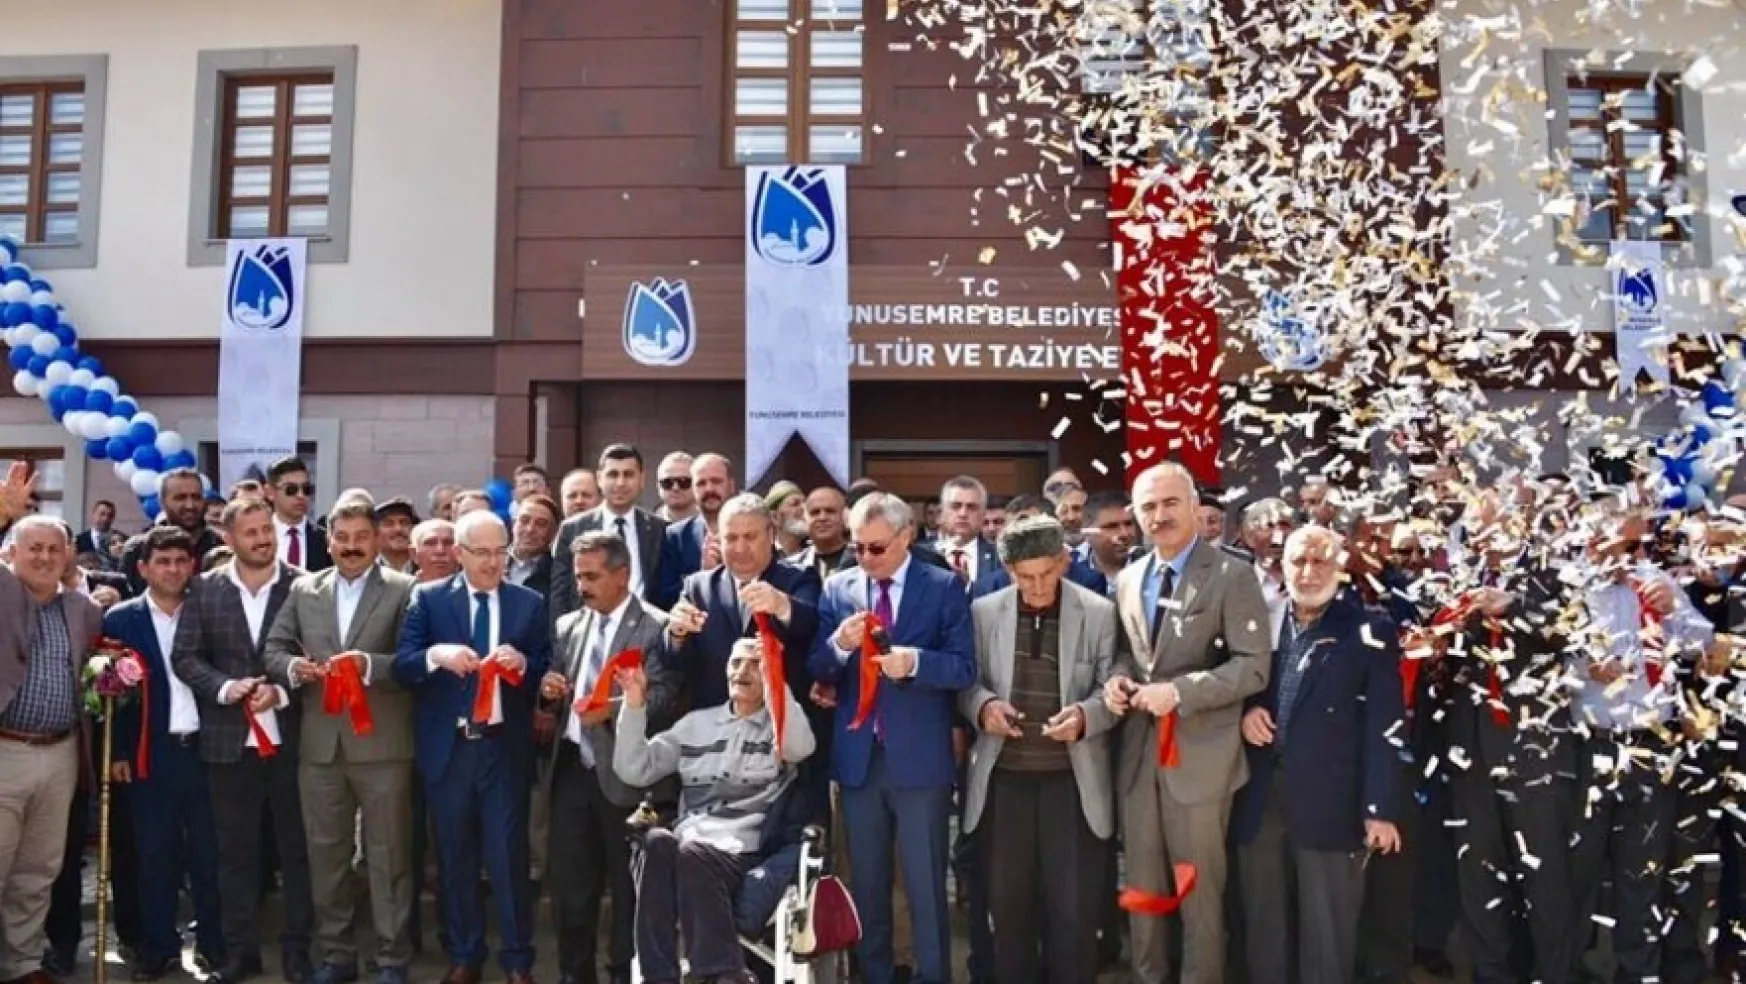 Fevzi Çakmak Kültür ve Taziye Evi Açıldı